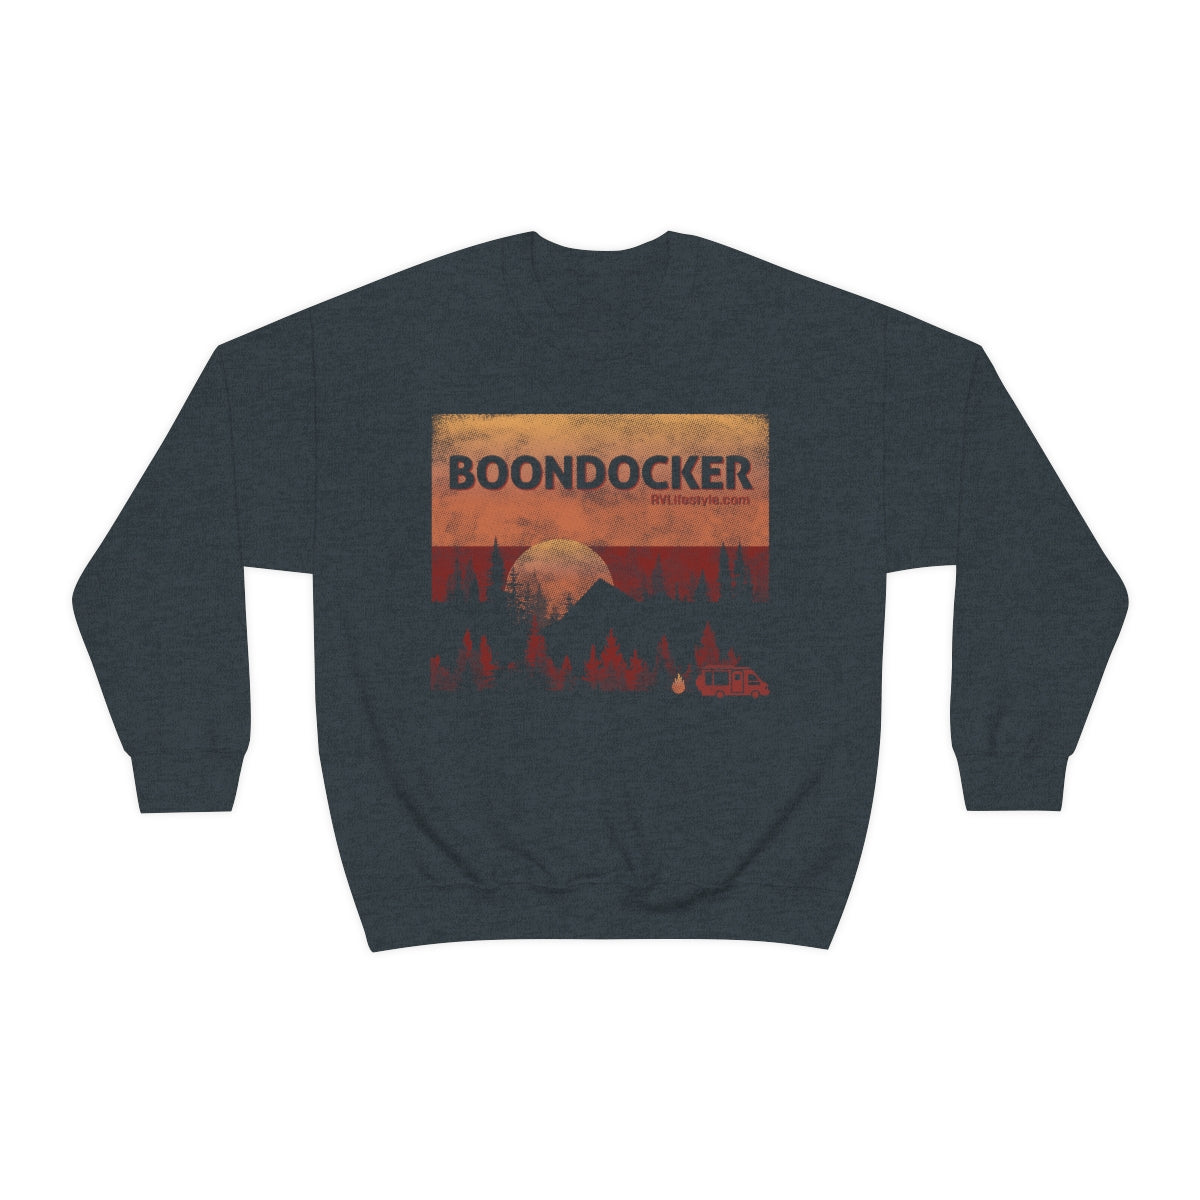 Boondocker Unisex Heavy Blend™ Crewneck Sweatshirt - Black, forest Green, Dark Heather, Navy